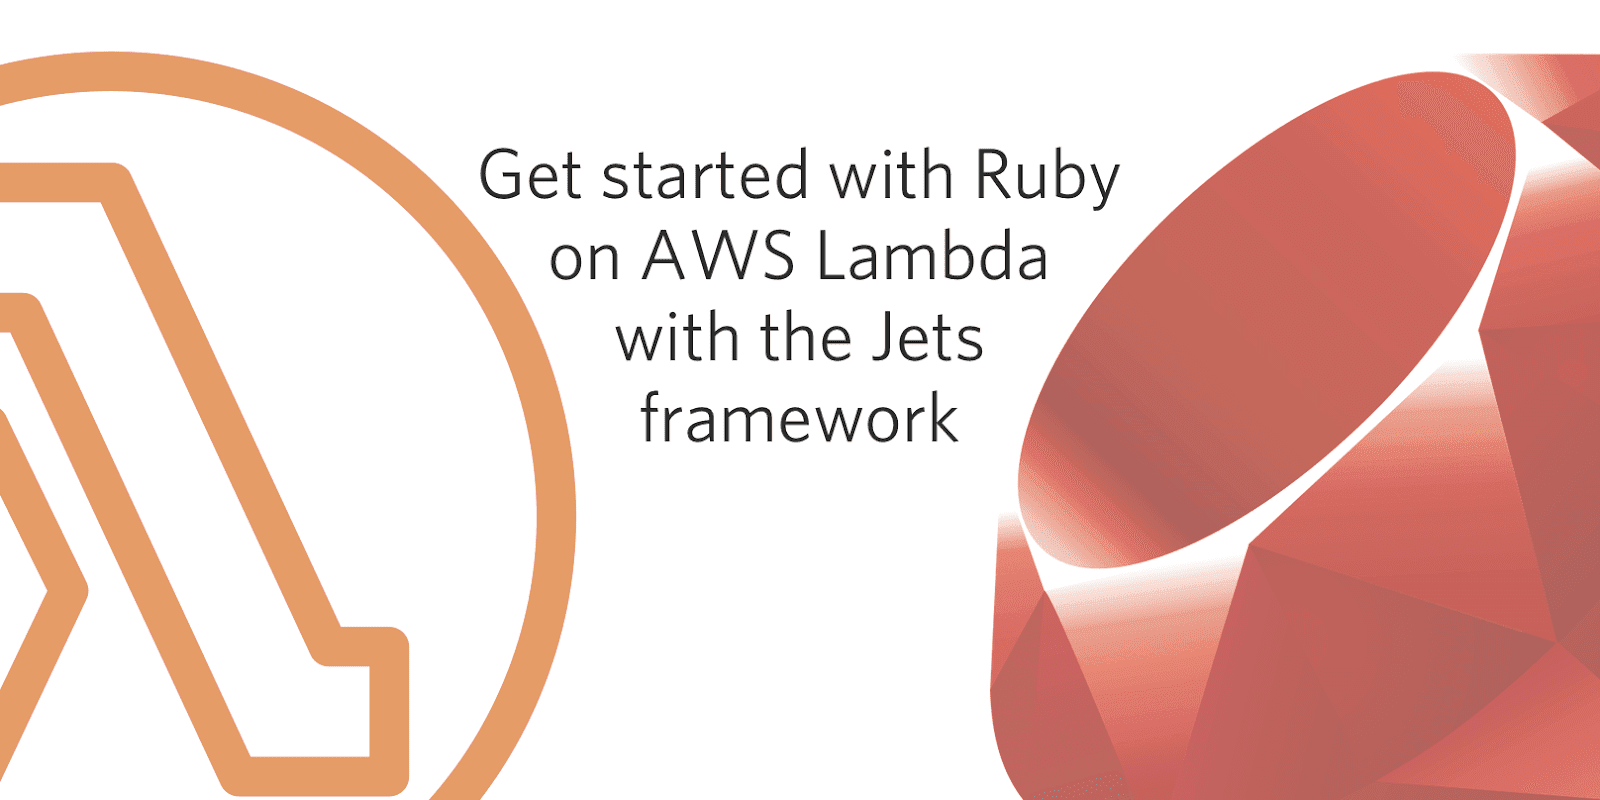 通过Jets框架在AWS Lambda上实现无服务化Ruby